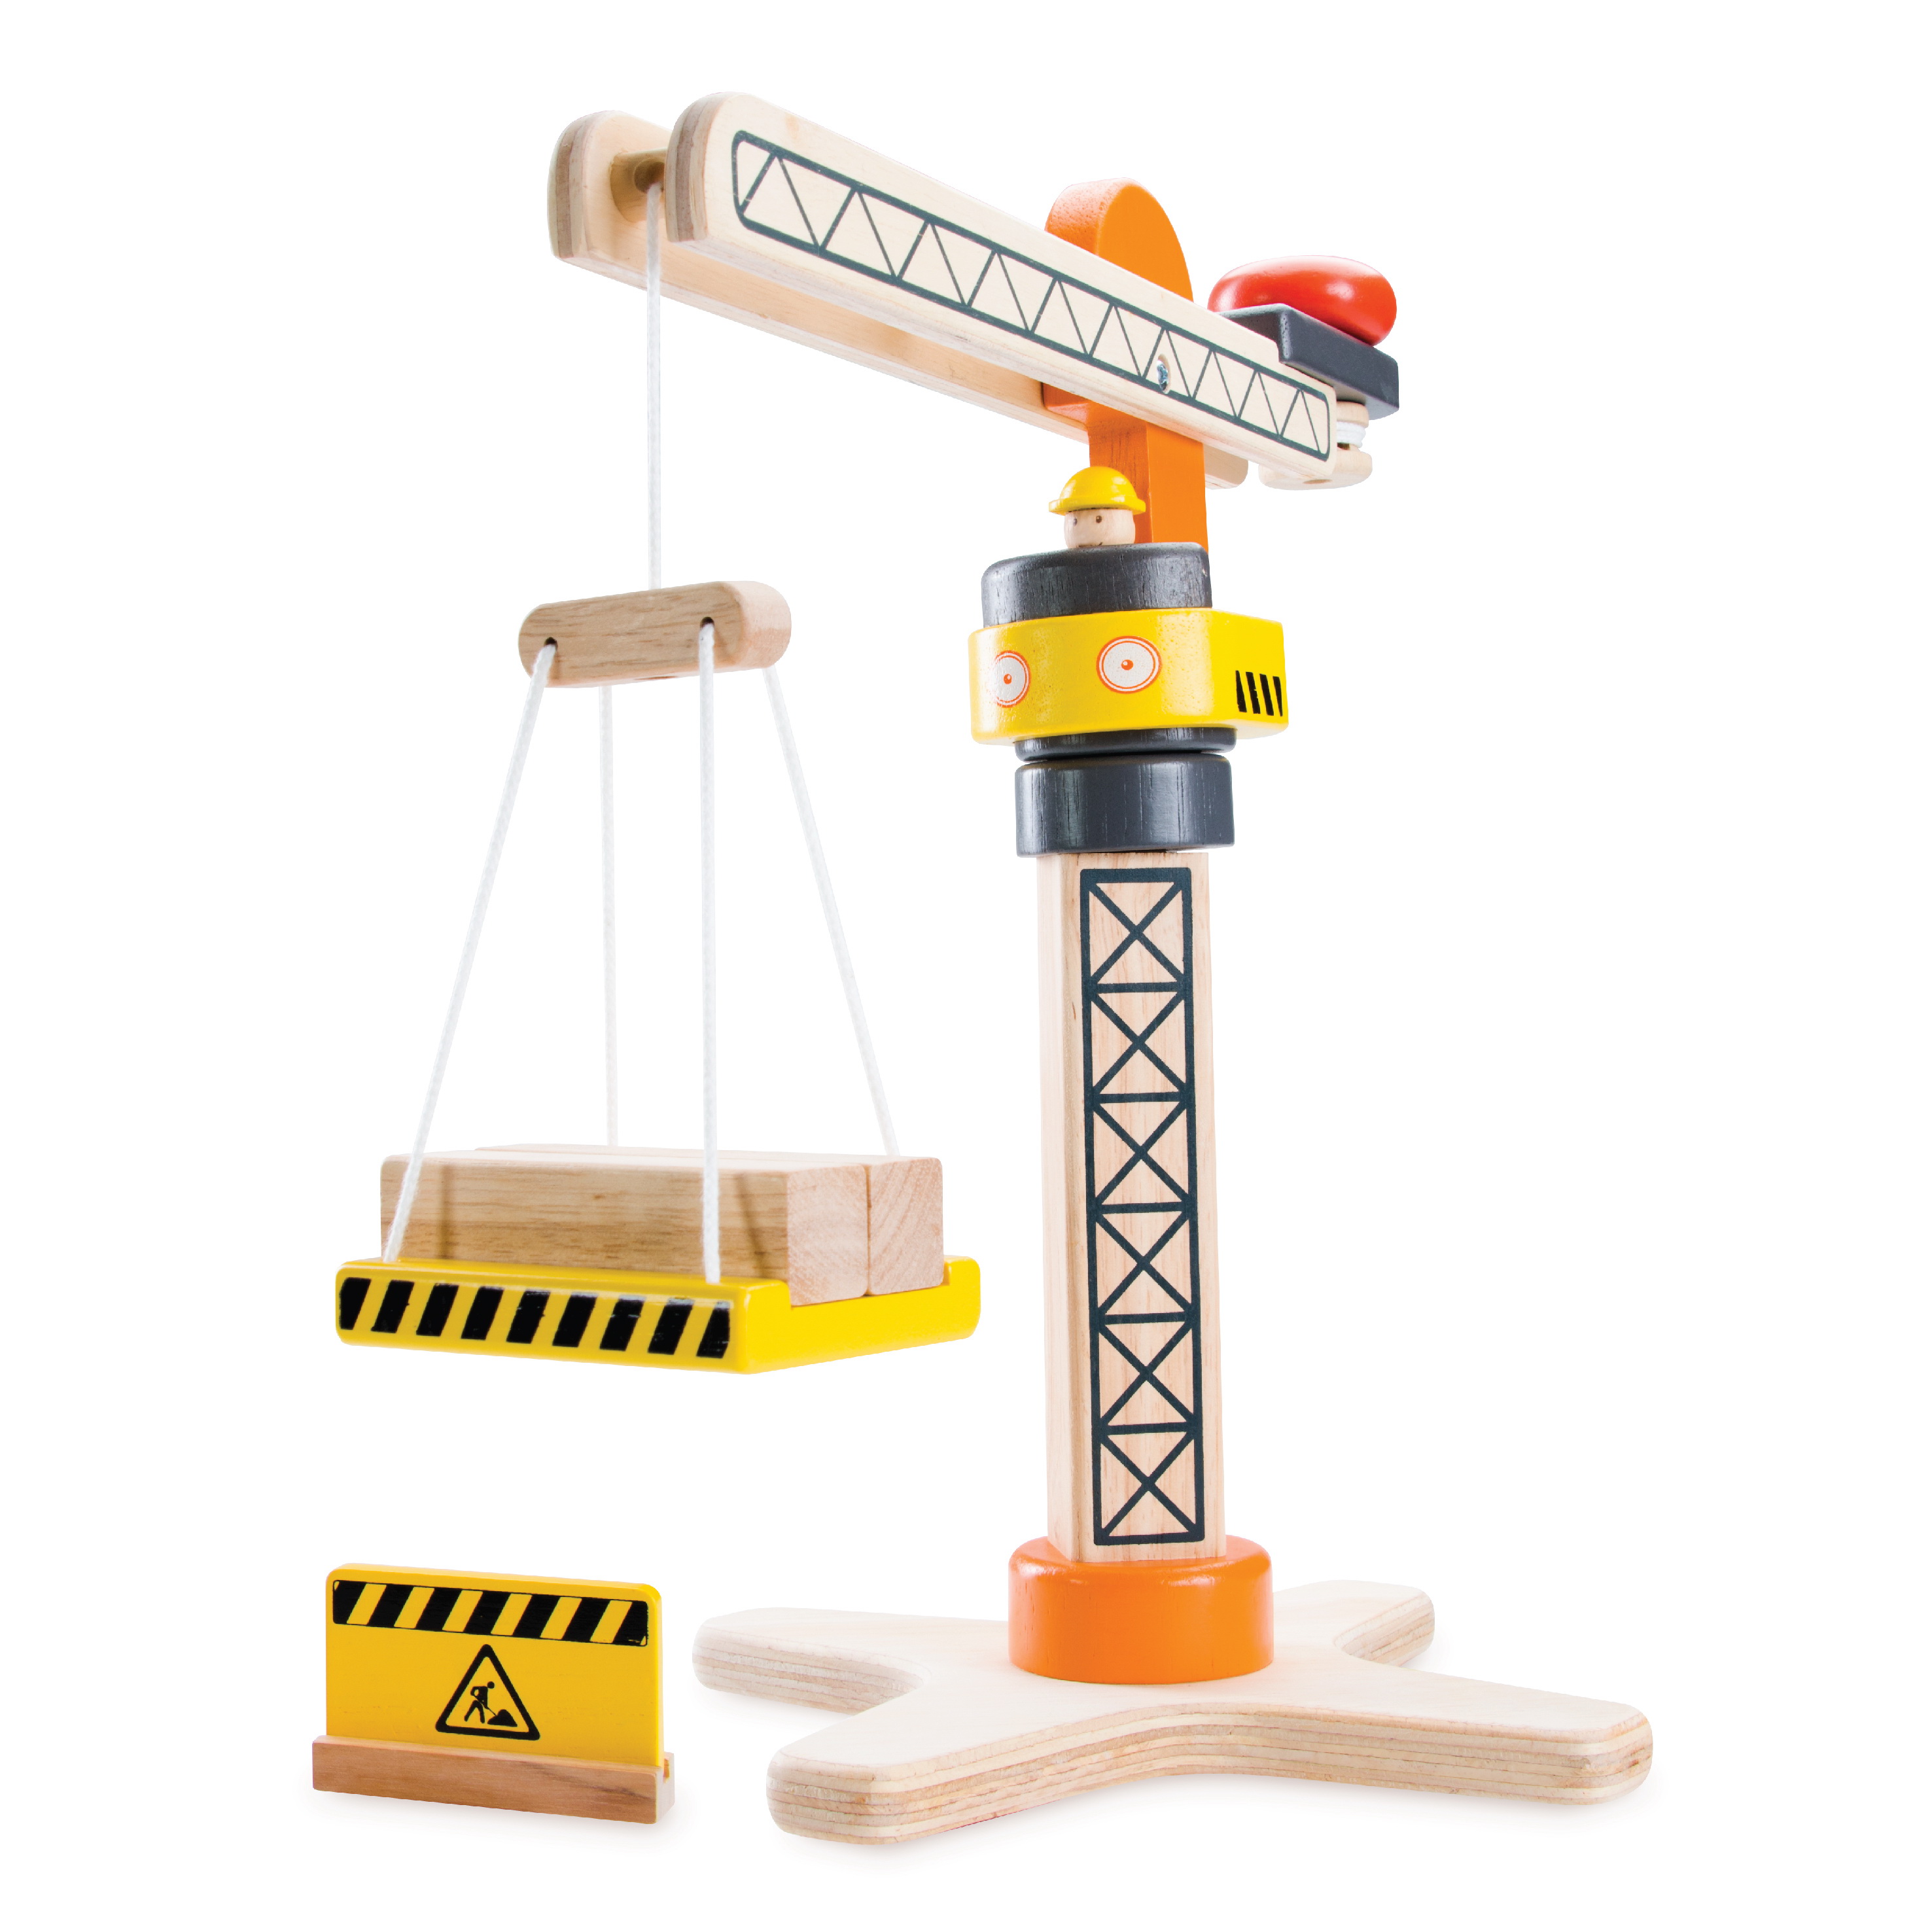 24 x 38 x 36 cm Multi-Colour Andreu Toys 40.4033 Wonder World Mini Tower Crane